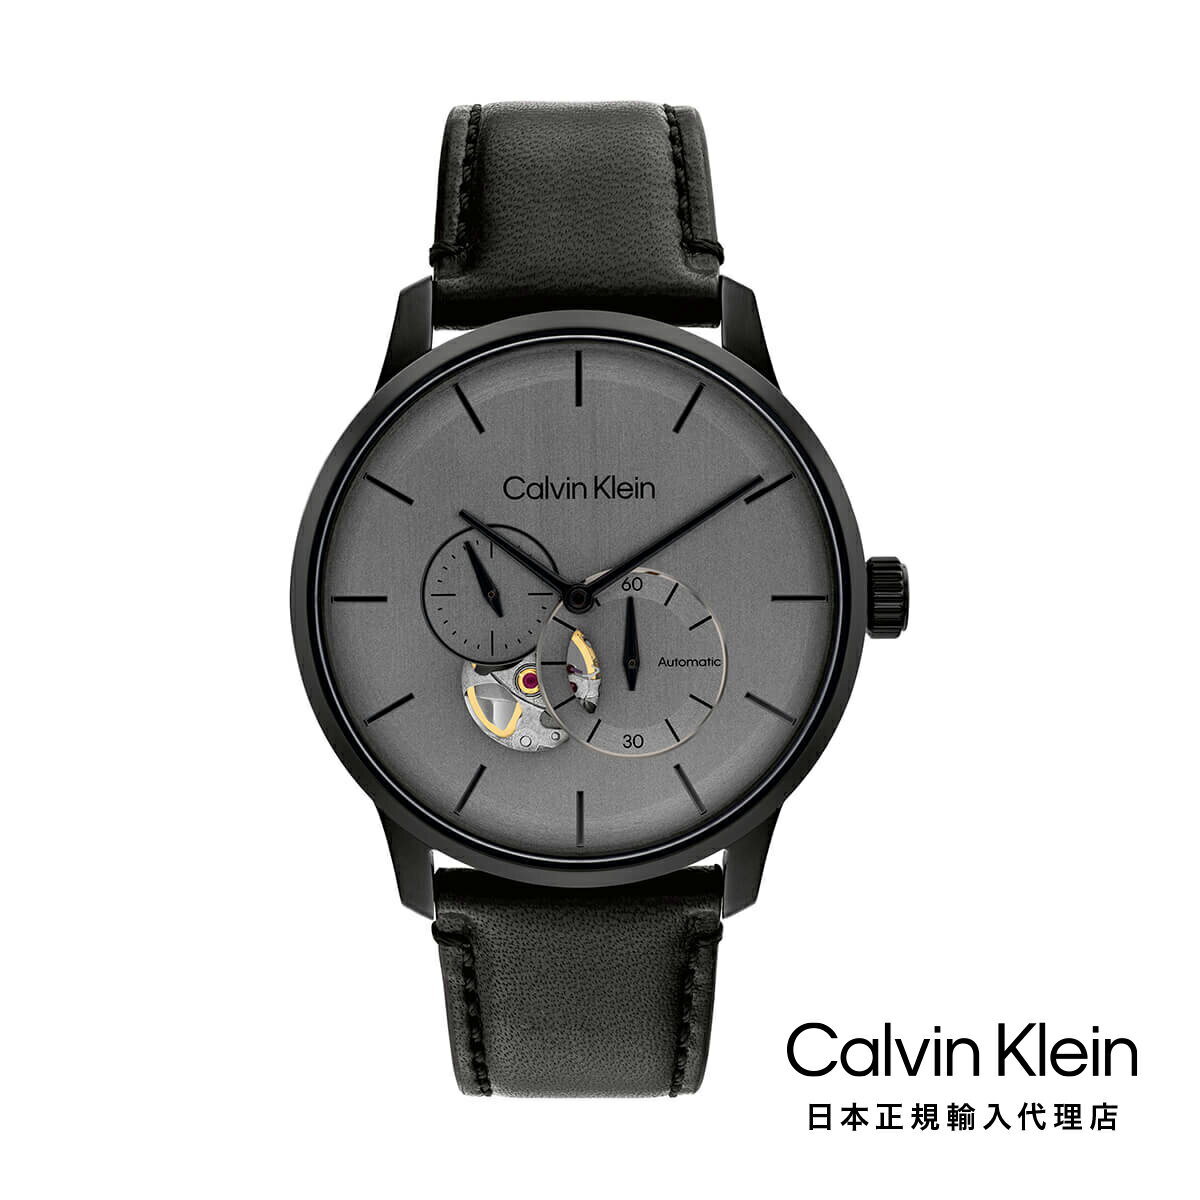 楽天H°M’S” WatchStoreCalvin Klein カルバンクライン 日本総輸入代理 腕時計 メンズ ブランド オートマティック ブラック IP 42MM グレー ブラッシュド ダイヤル/ブラック レザー ストラップ